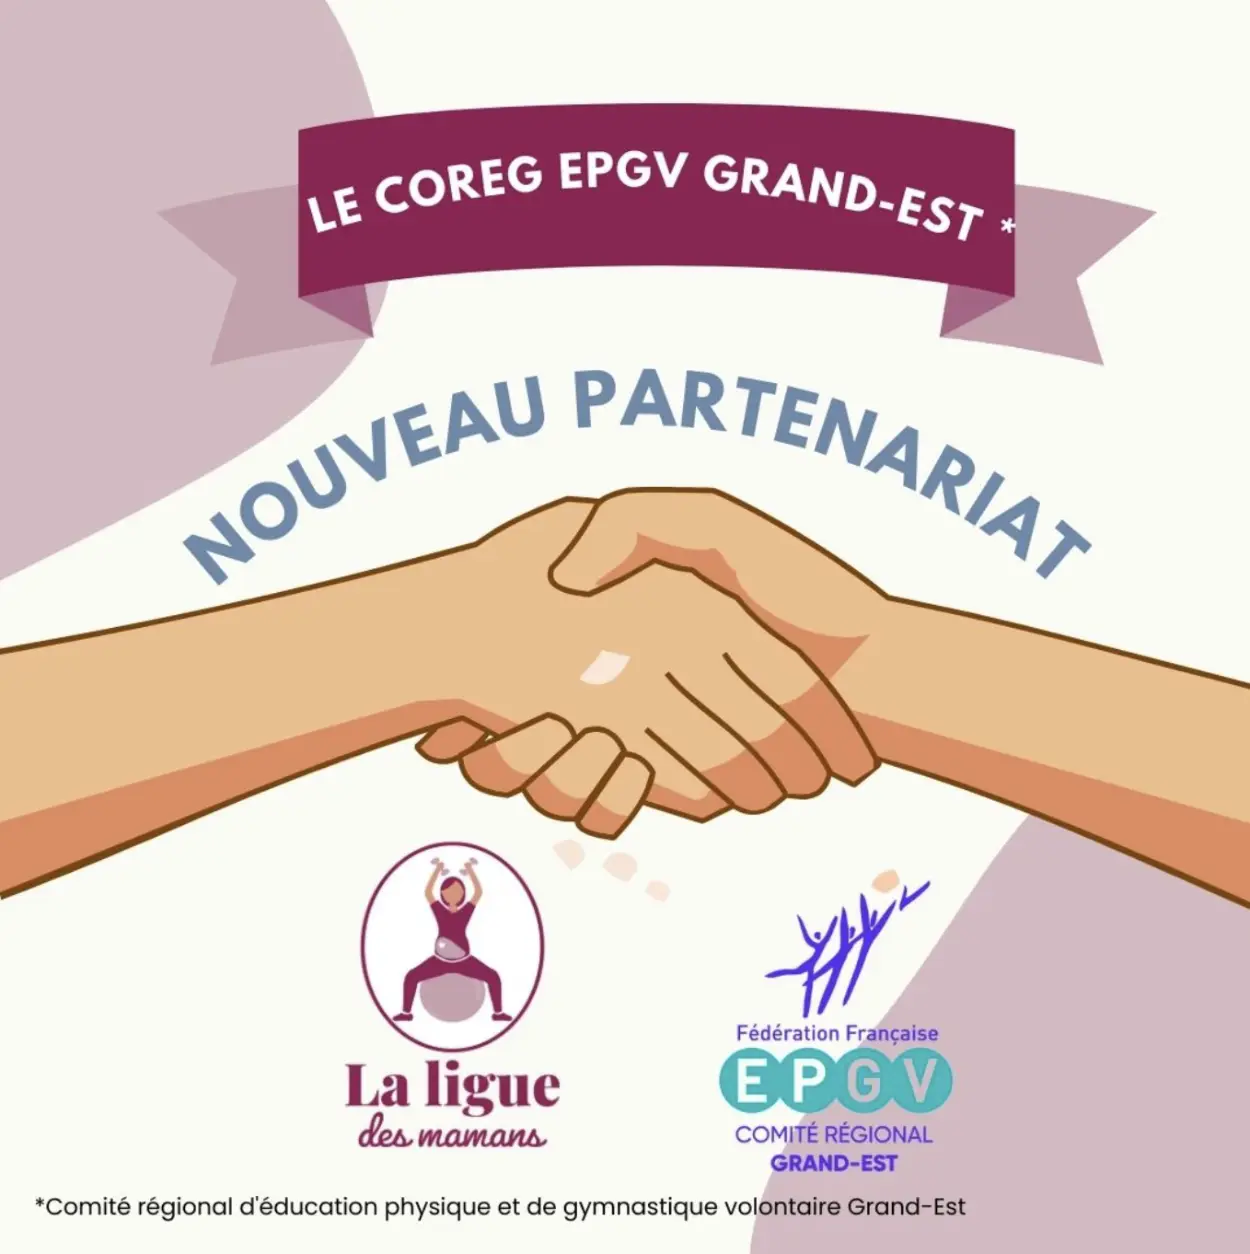 Nouveau partenariat avec le Coreg EPGV Grand-Est